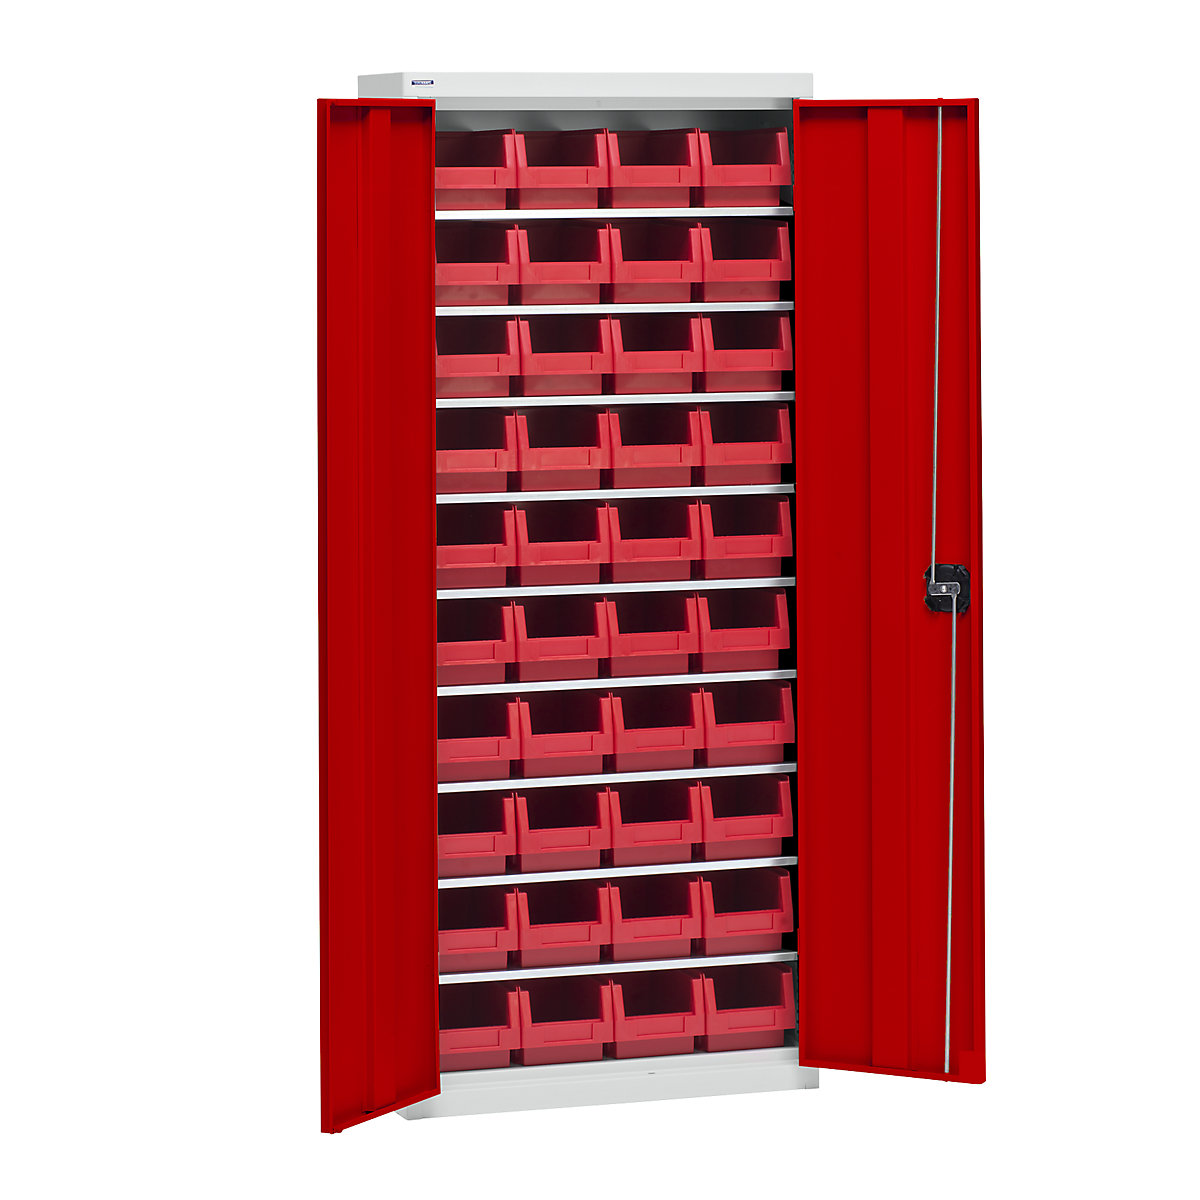 Materiaalkast met magazijnbakken – eurokraft pro, hoogte 1575 mm, 9 legborden, lichtgrijs / verkeersrood-5